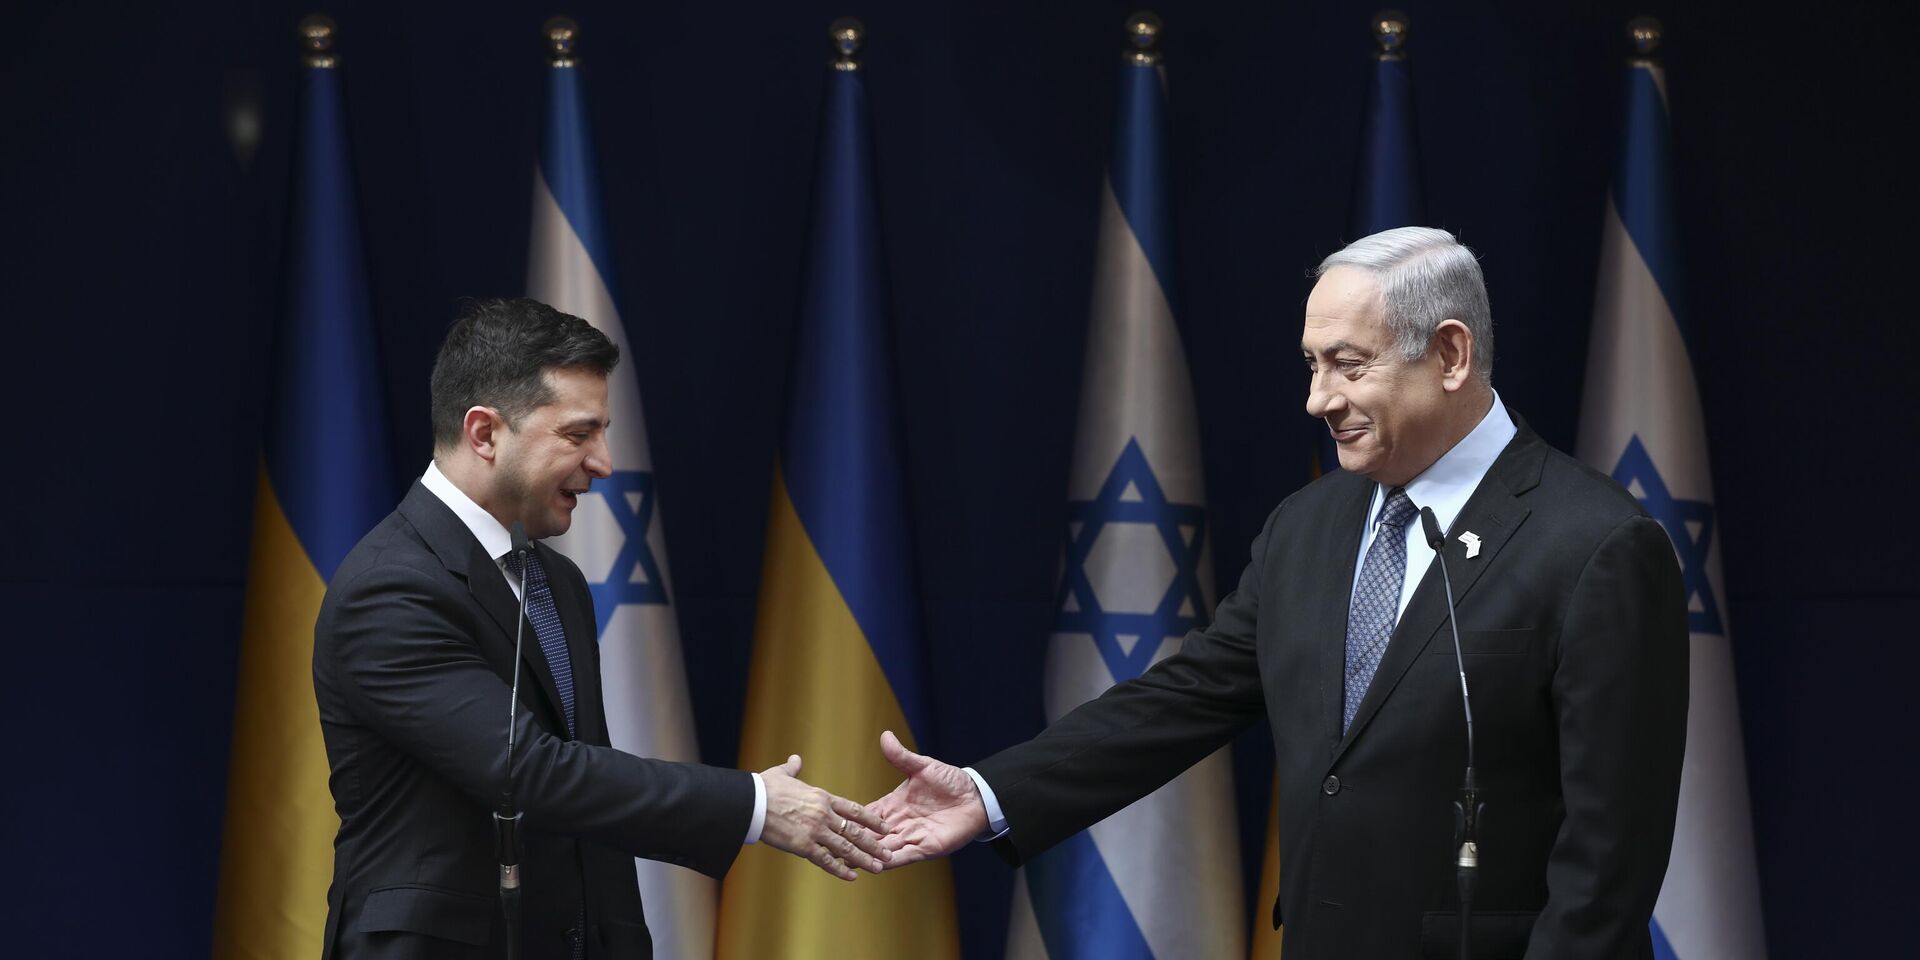 Премьер-министр Израиля Биньямин Нетаньяху (справа) и президент Украины Владимир Зеленский обмениваются рукопожатием во время встречи в Иерусалиме в пятницу, 24 января 2020 г. - ИноСМИ, 1920, 13.06.2023